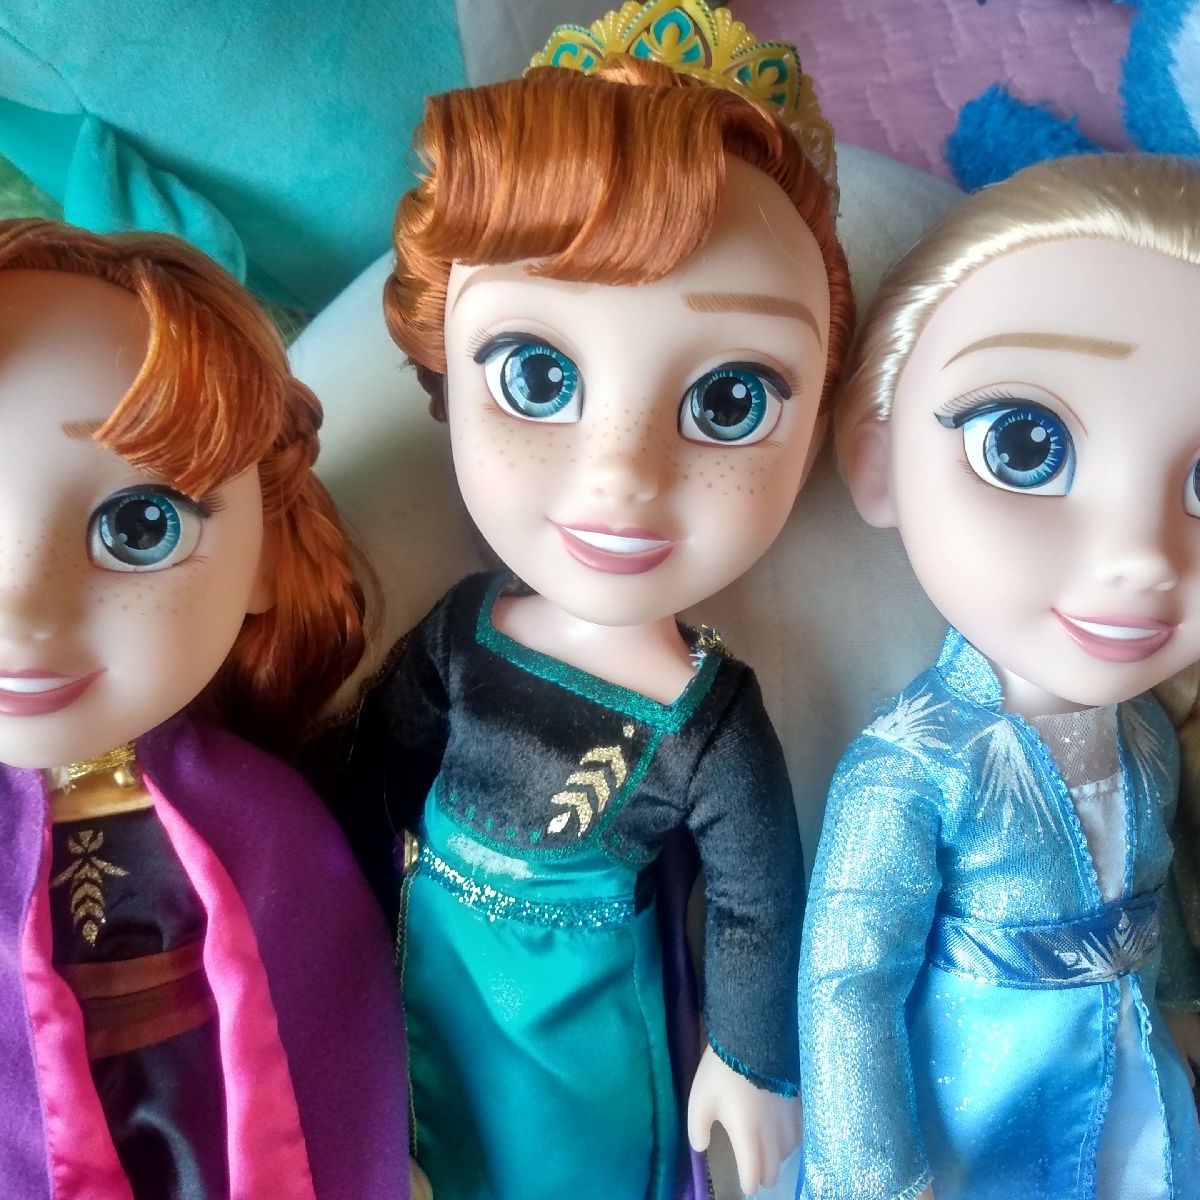 Kit 2 Bonecas Frozen Elsa E Anna Importada Disney Store Eua